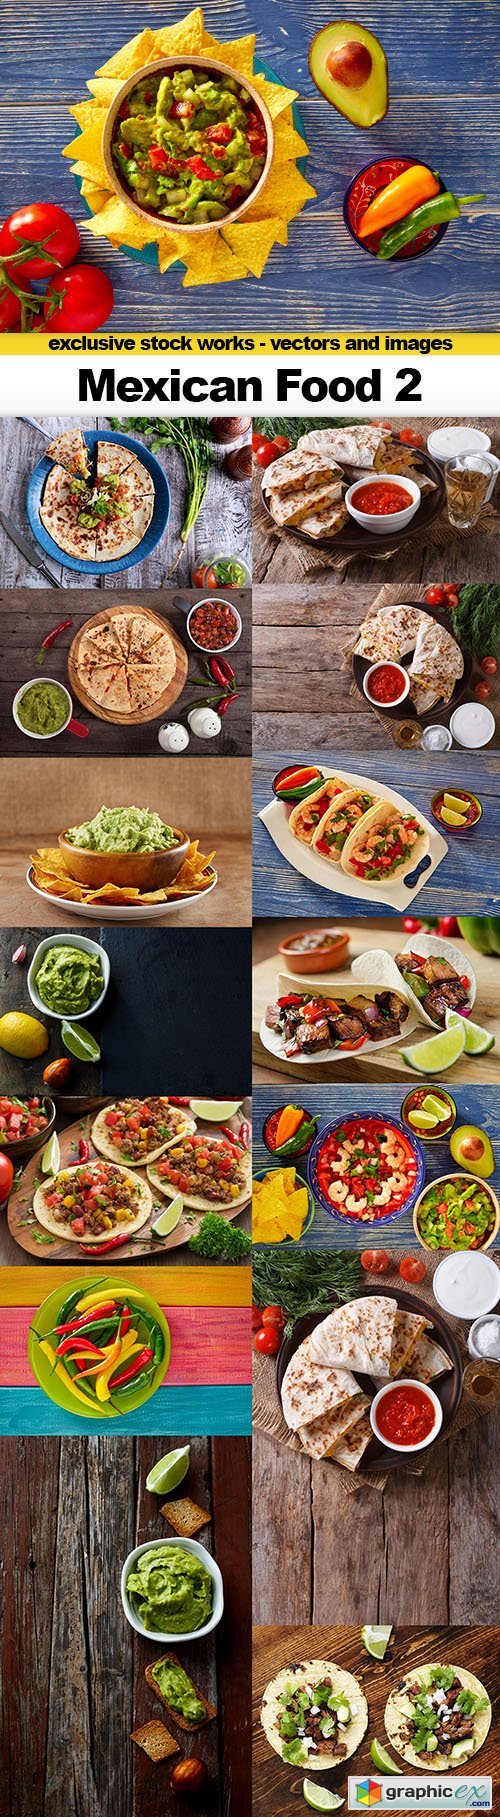 Mexican Food 2 - 15xUHQ JPEG